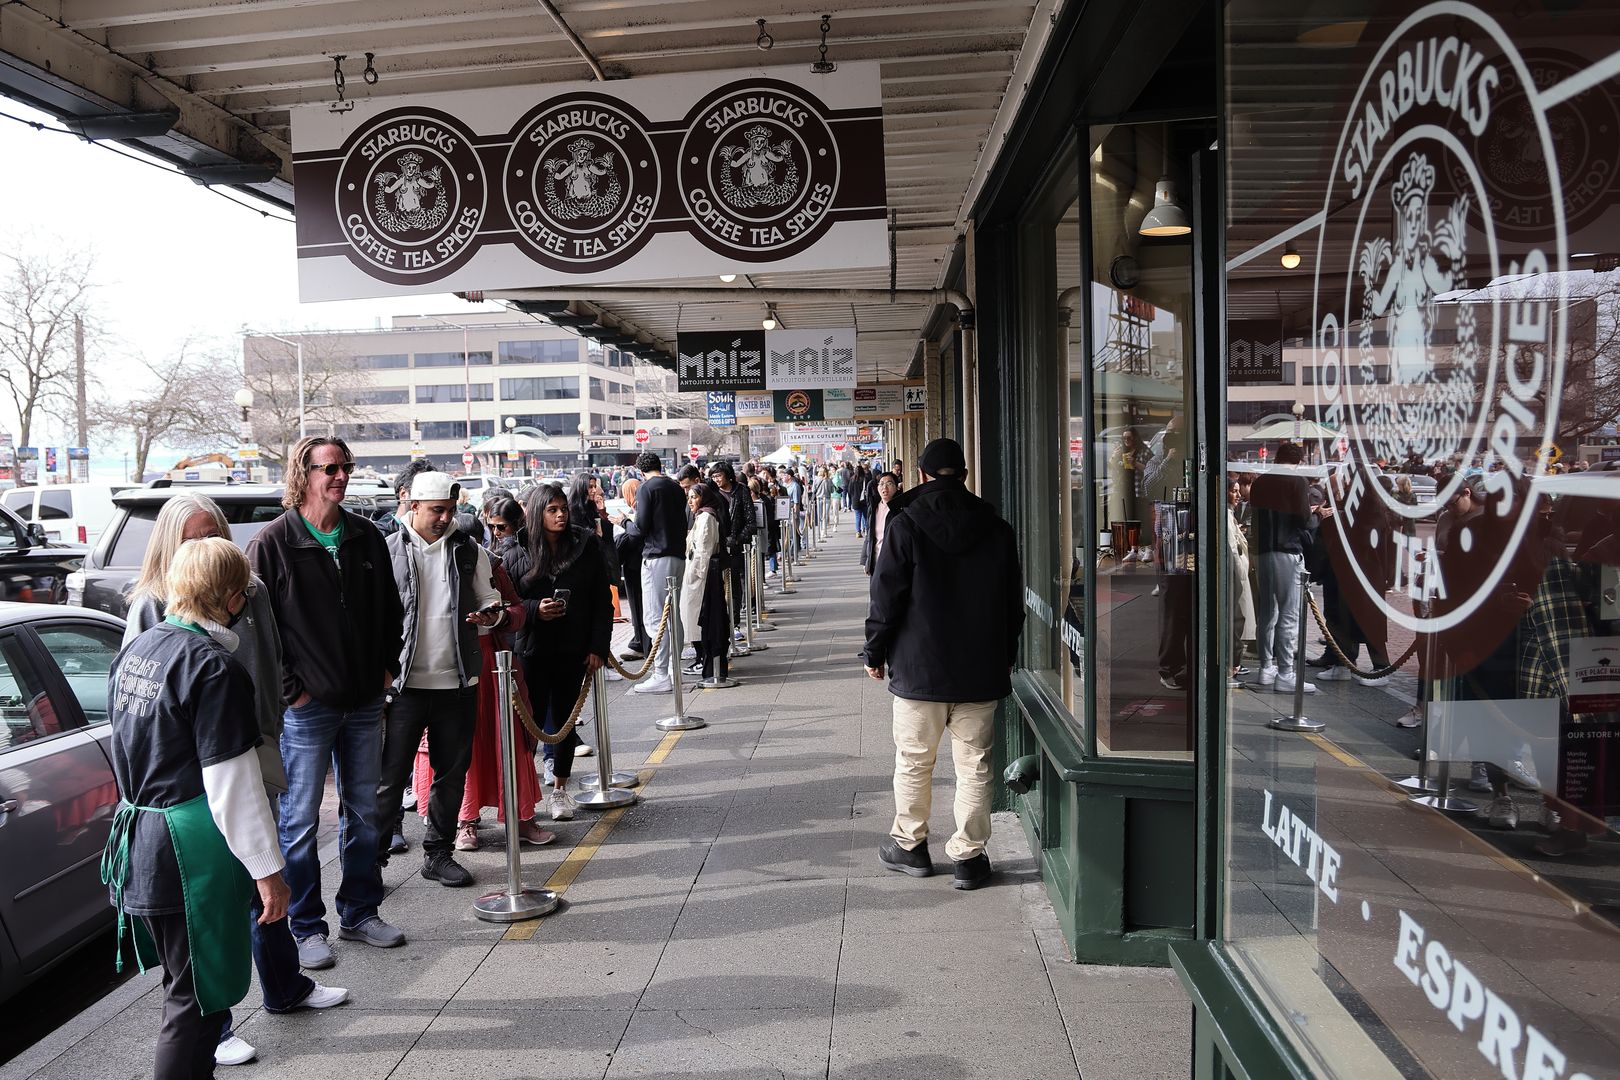 25,6 miliona odszkodowania dla pracownicy Starbucks. To kara za zwolnienie z pracy